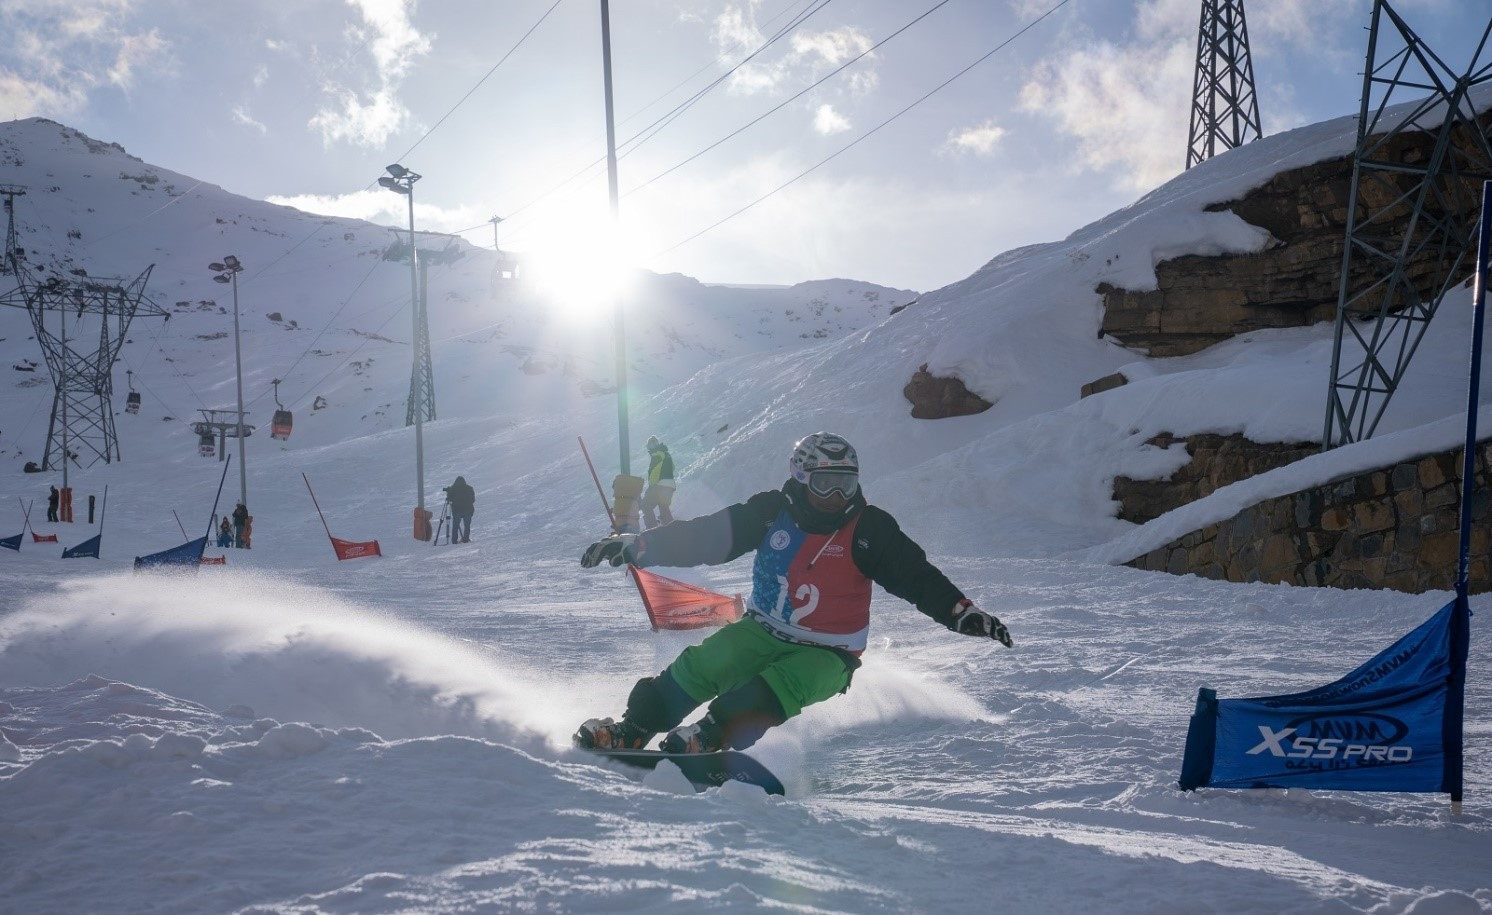 قهرمانی در قلب کوهستان در مسابقات جایزه بزرگ اسکی اسنوبرد MVM